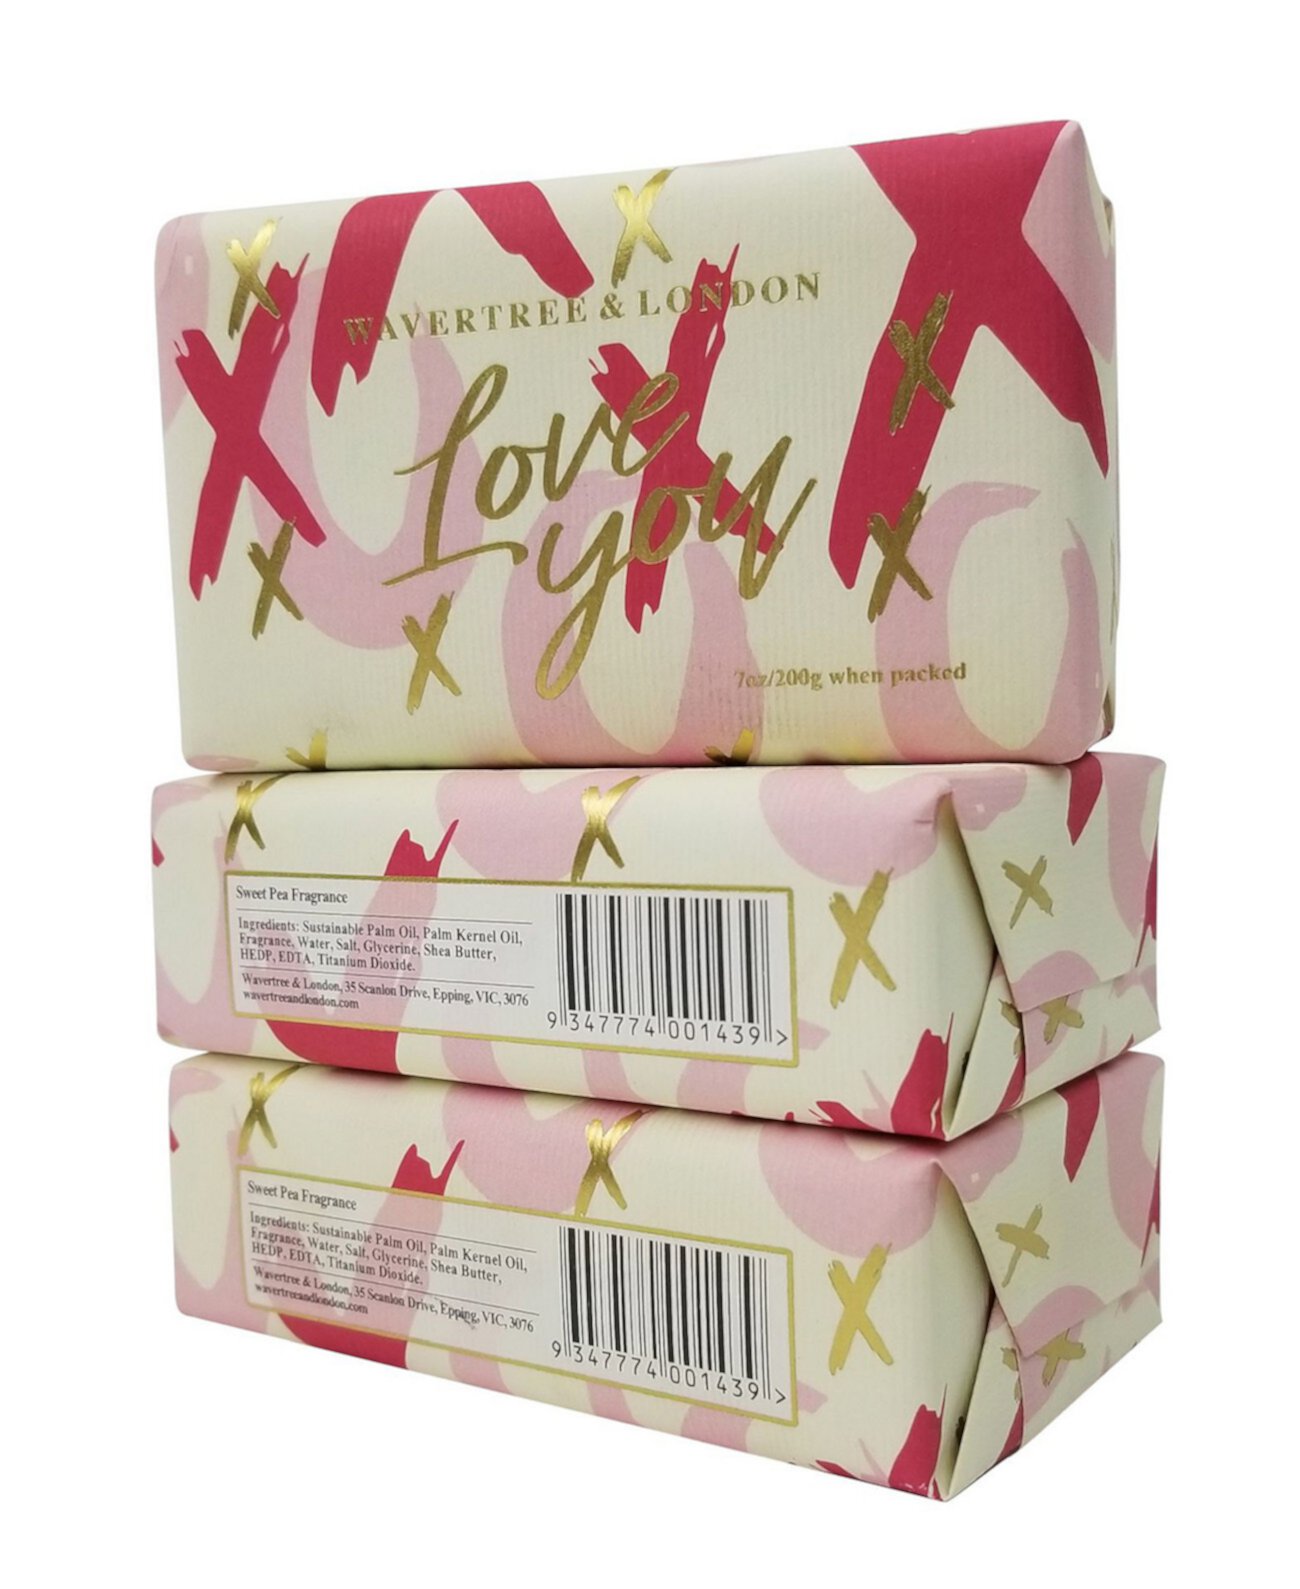 Love You - Xox - Кусковое мыло, упаковка из 3 штук по 7 унций каждая Wavertree & London